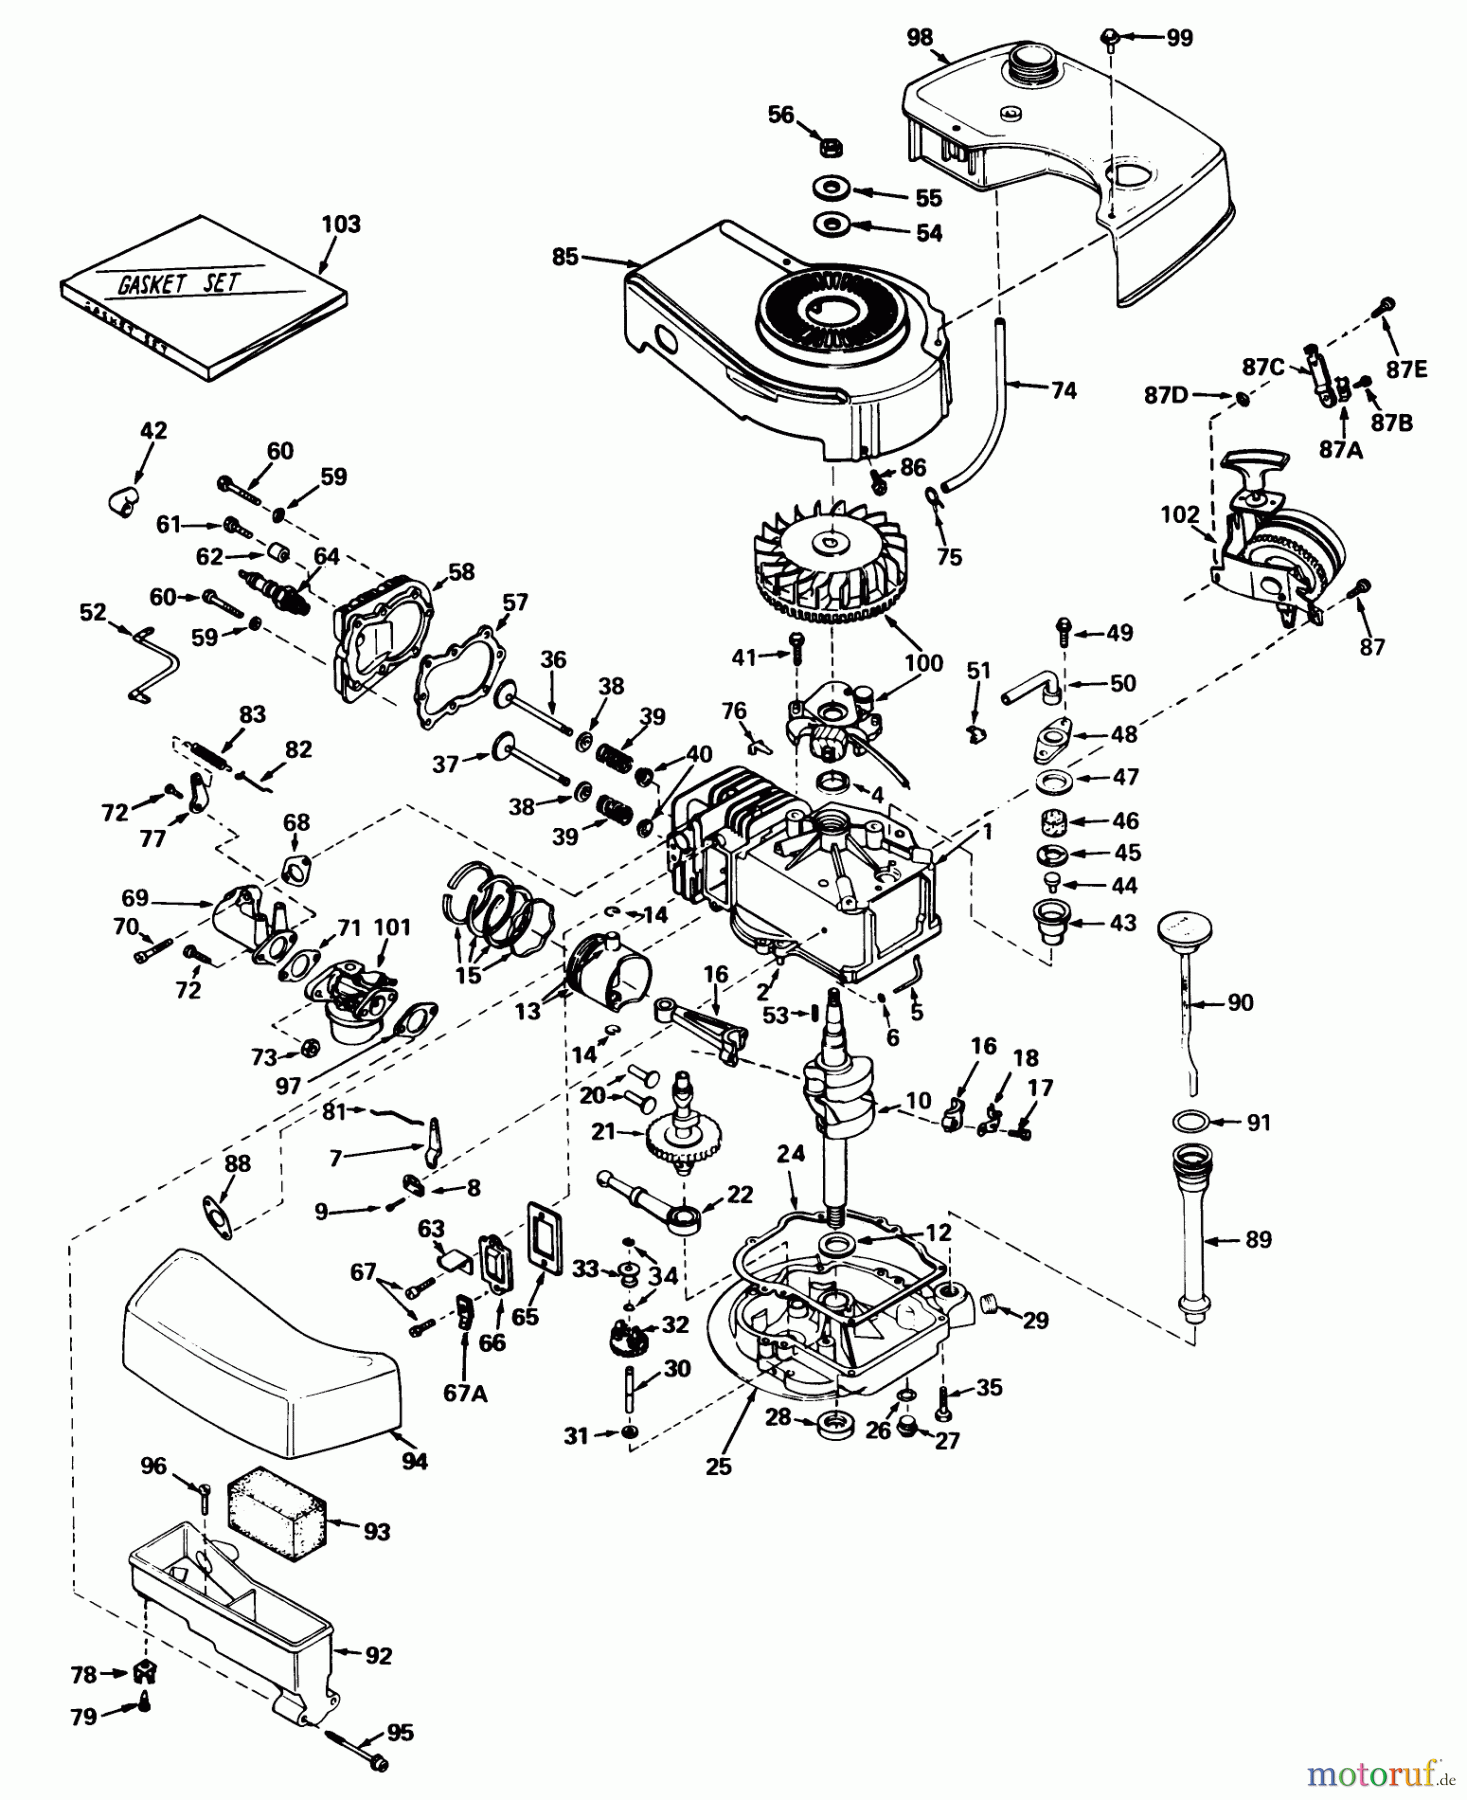  Toro Neu Mowers, Walk-Behind Seite 1 20550 - Toro Lawnmower, 1975 (5000001-5999999) ENGINE TECUMSEH MODEL NO. TNT 120-12005